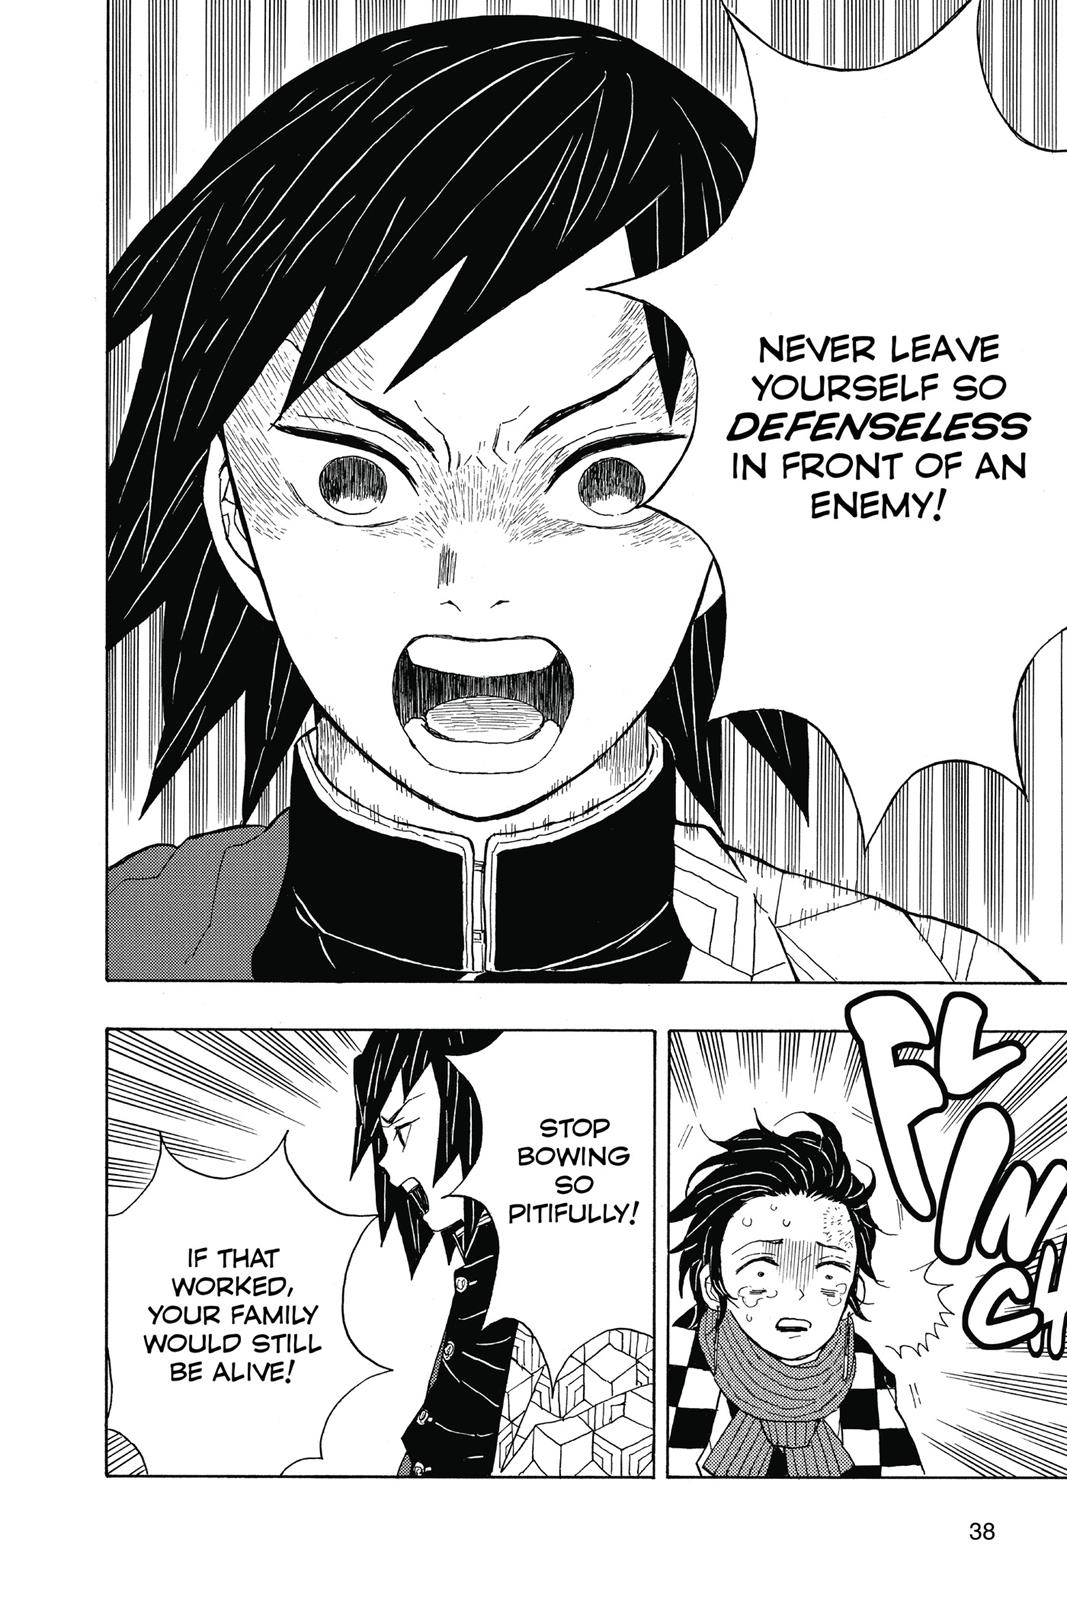 Demon Slayer Manga Manga Chapter - 1 - image 19